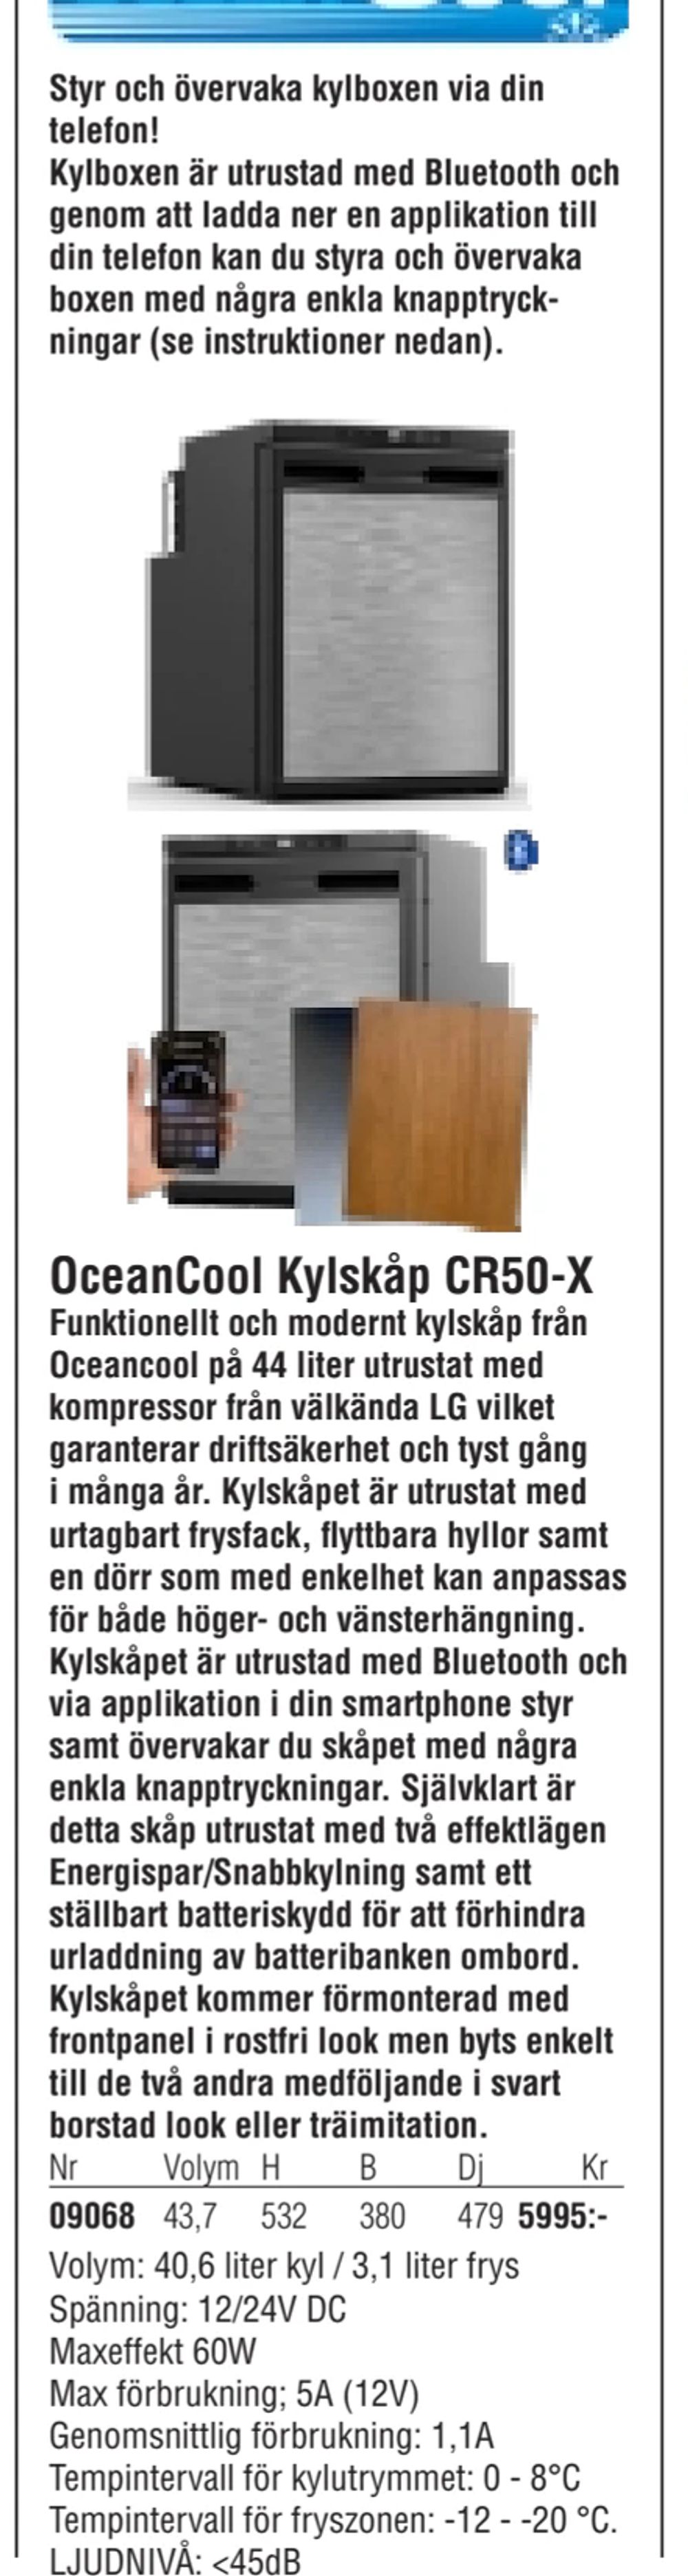 Erbjudanden på OceanCool Kylskåp CR50-X från Erlandsons Brygga för 5 995 kr